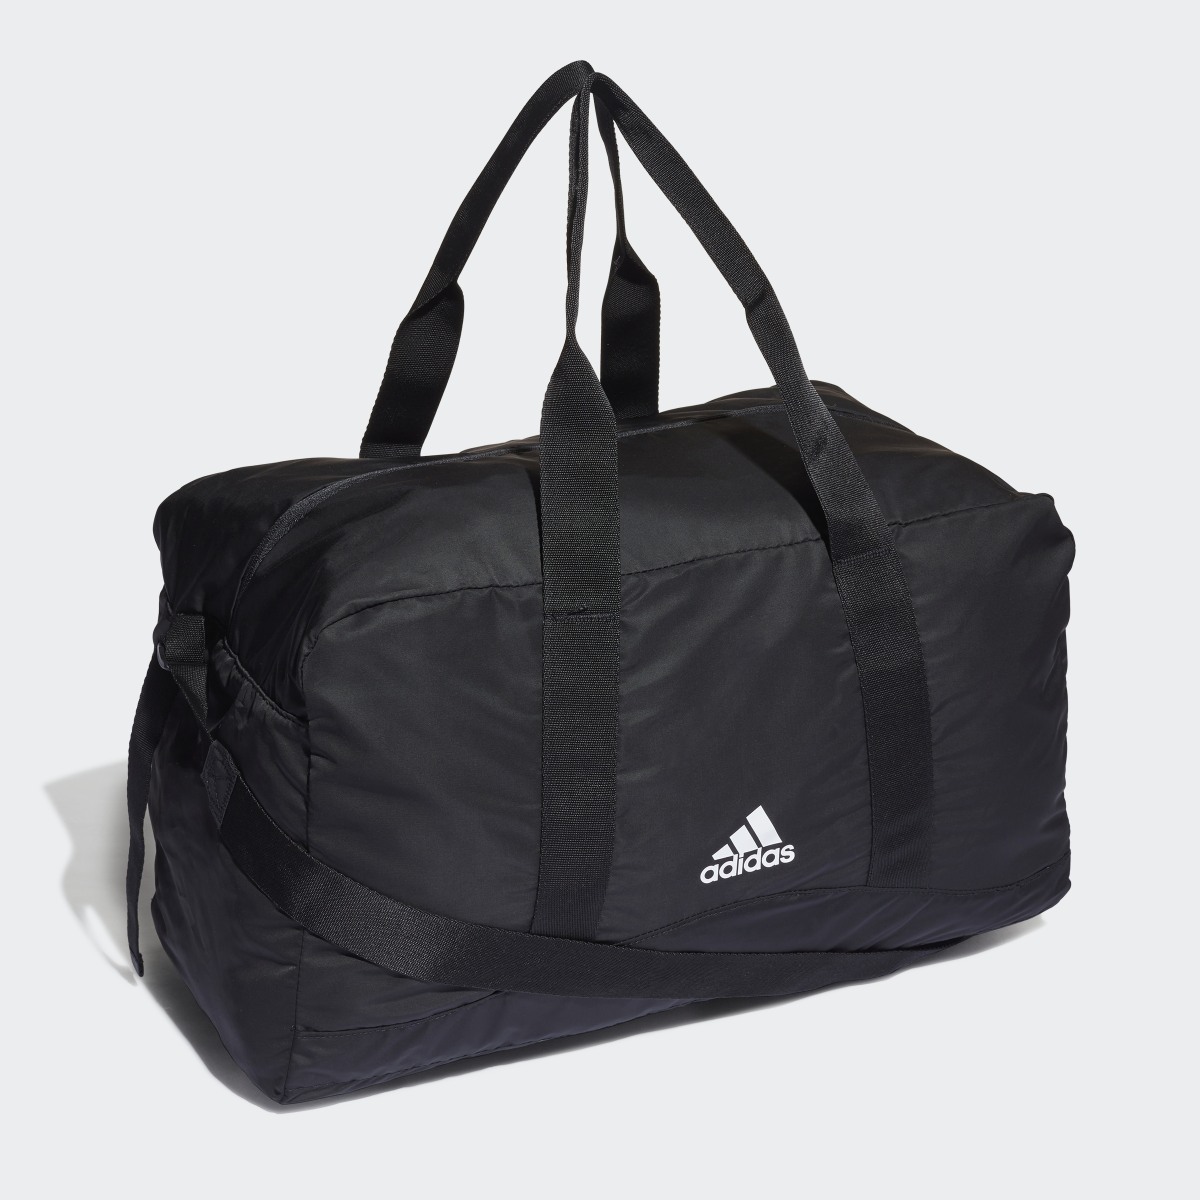 Adidas Sport Duffel Bag. 4